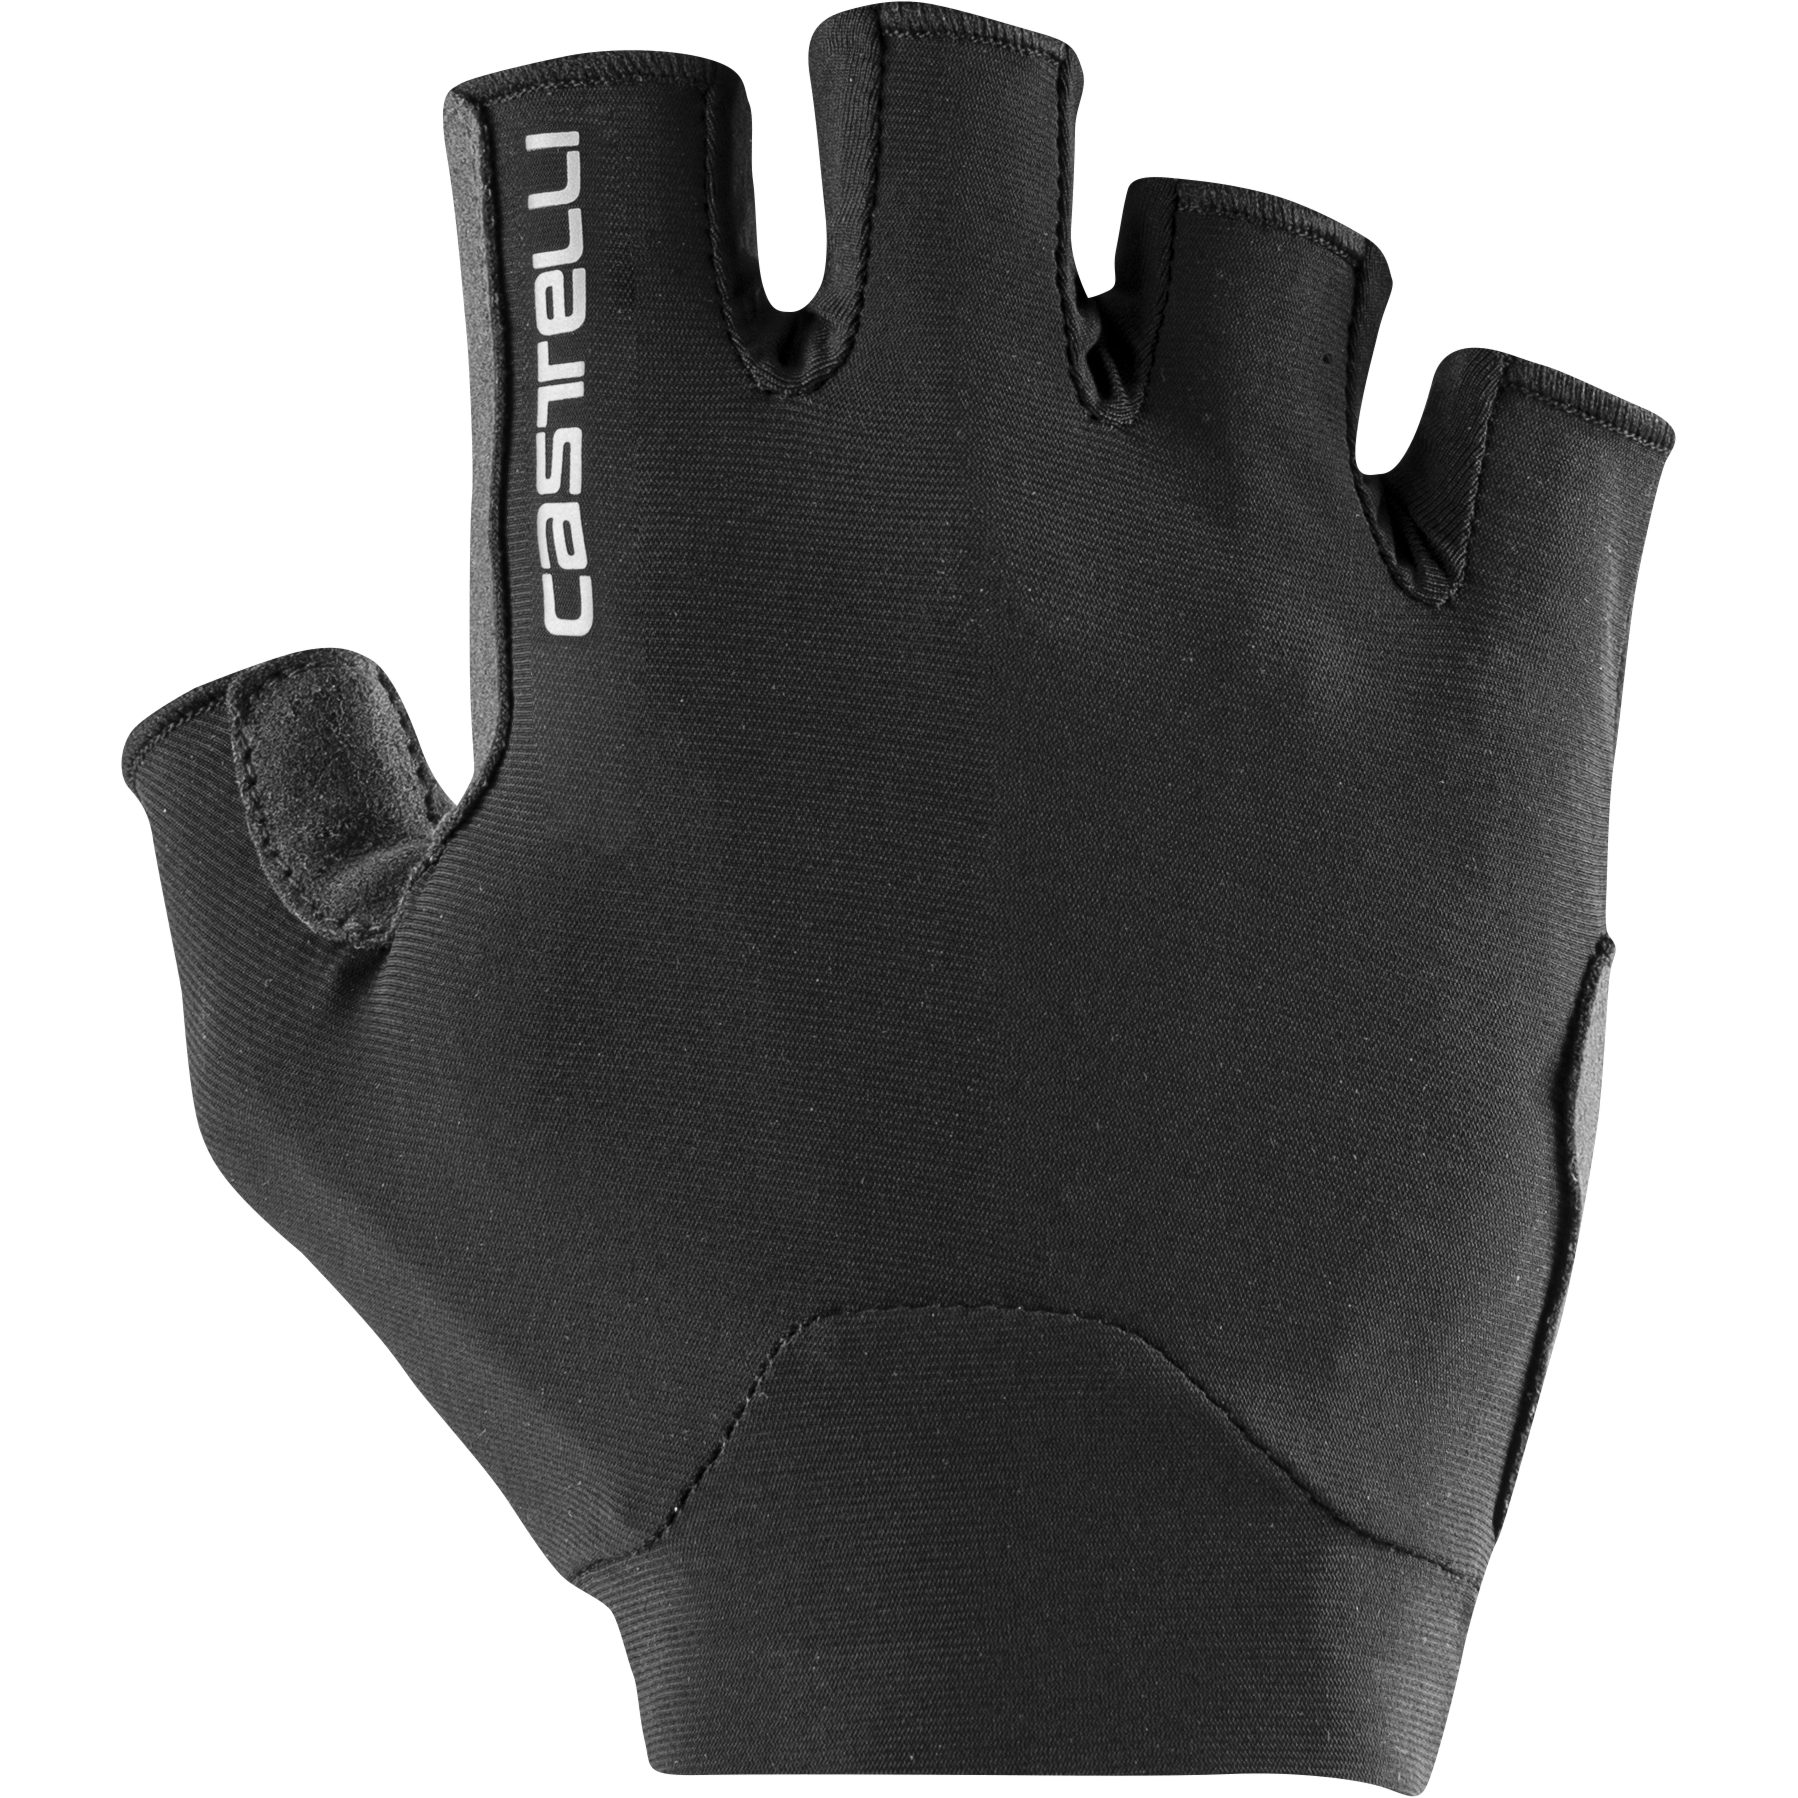 Produktbild von Castelli Endurance Handschuhe - schwarz 010